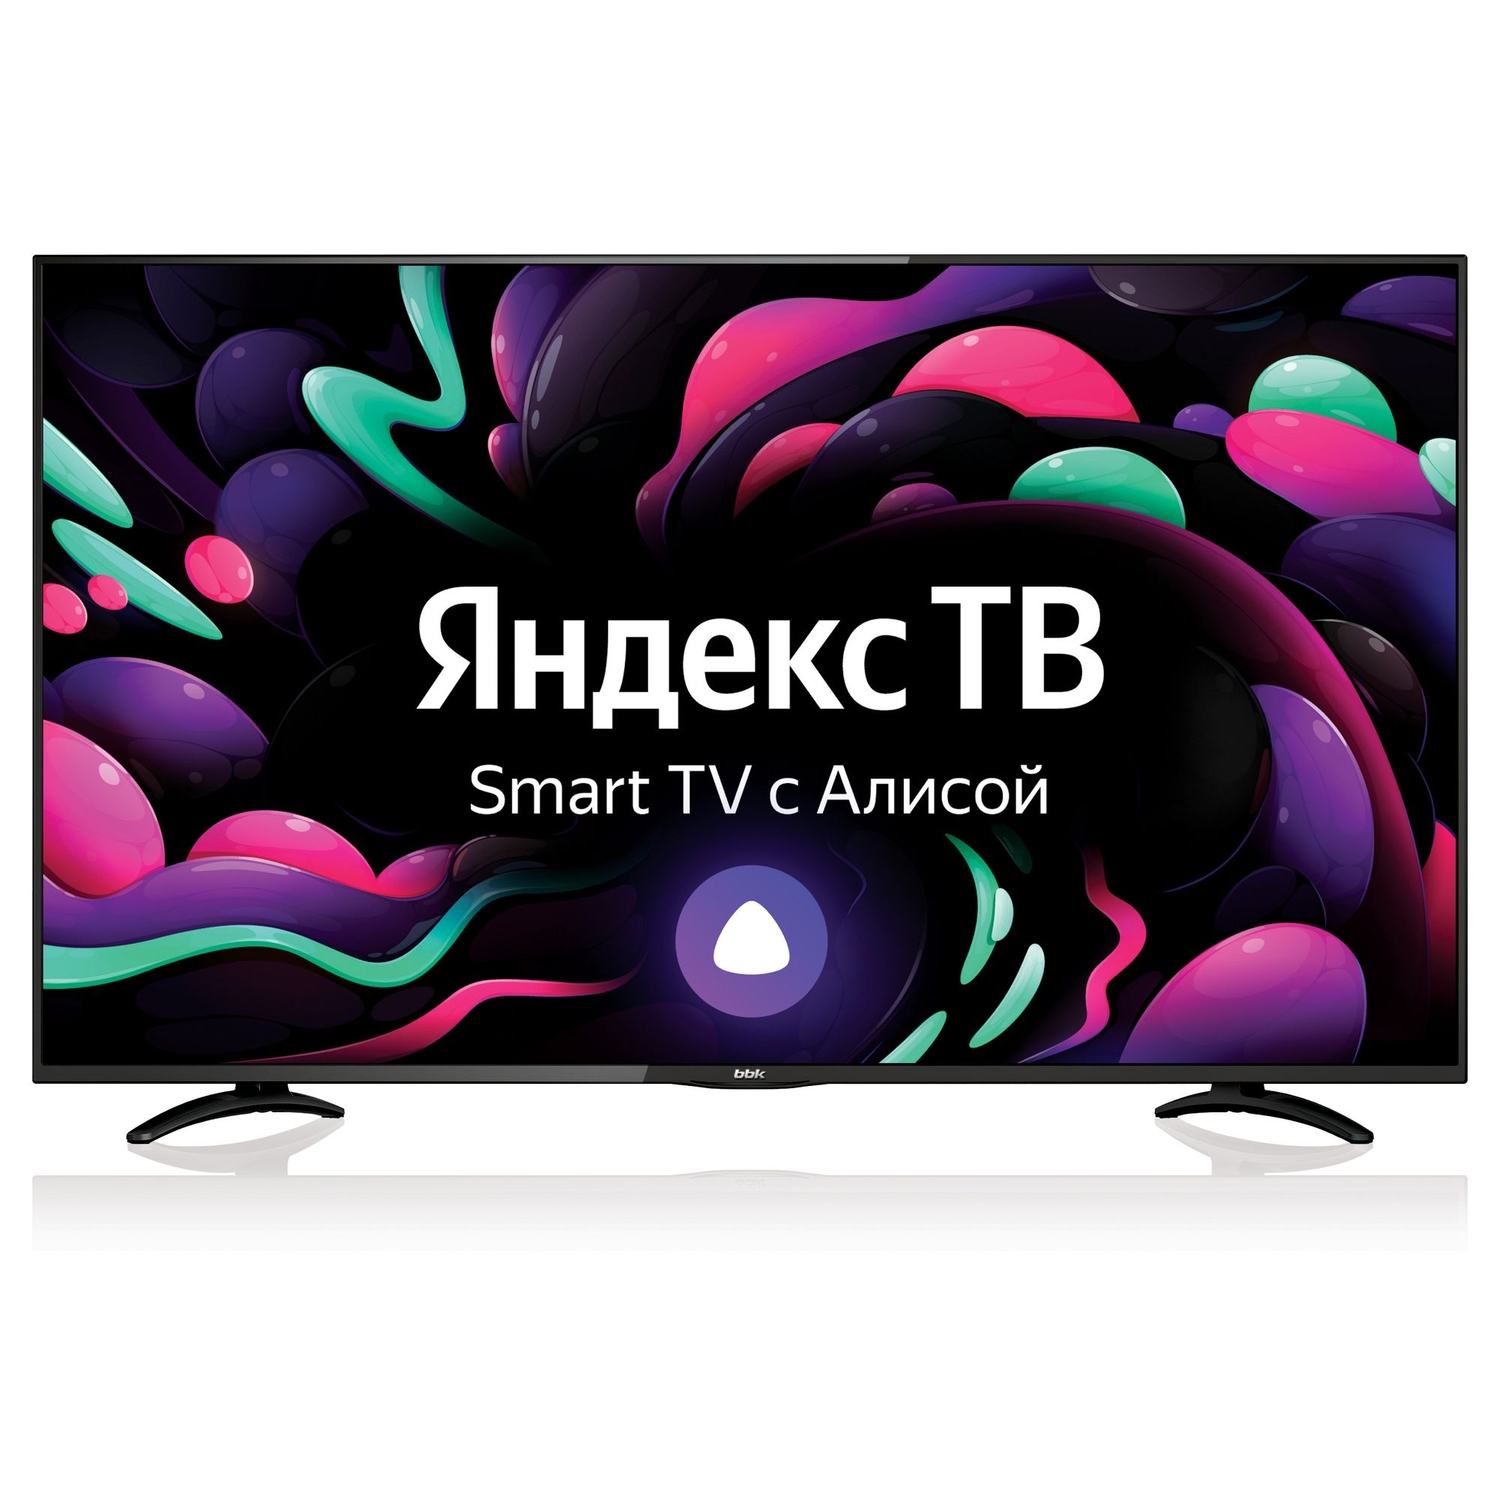 Телевизор BBK 50 50LEX-8289/UTS2C Яндекс ТВ черный телевизор bbk 50lex 9201 uts2c 50 4k яндекс тв